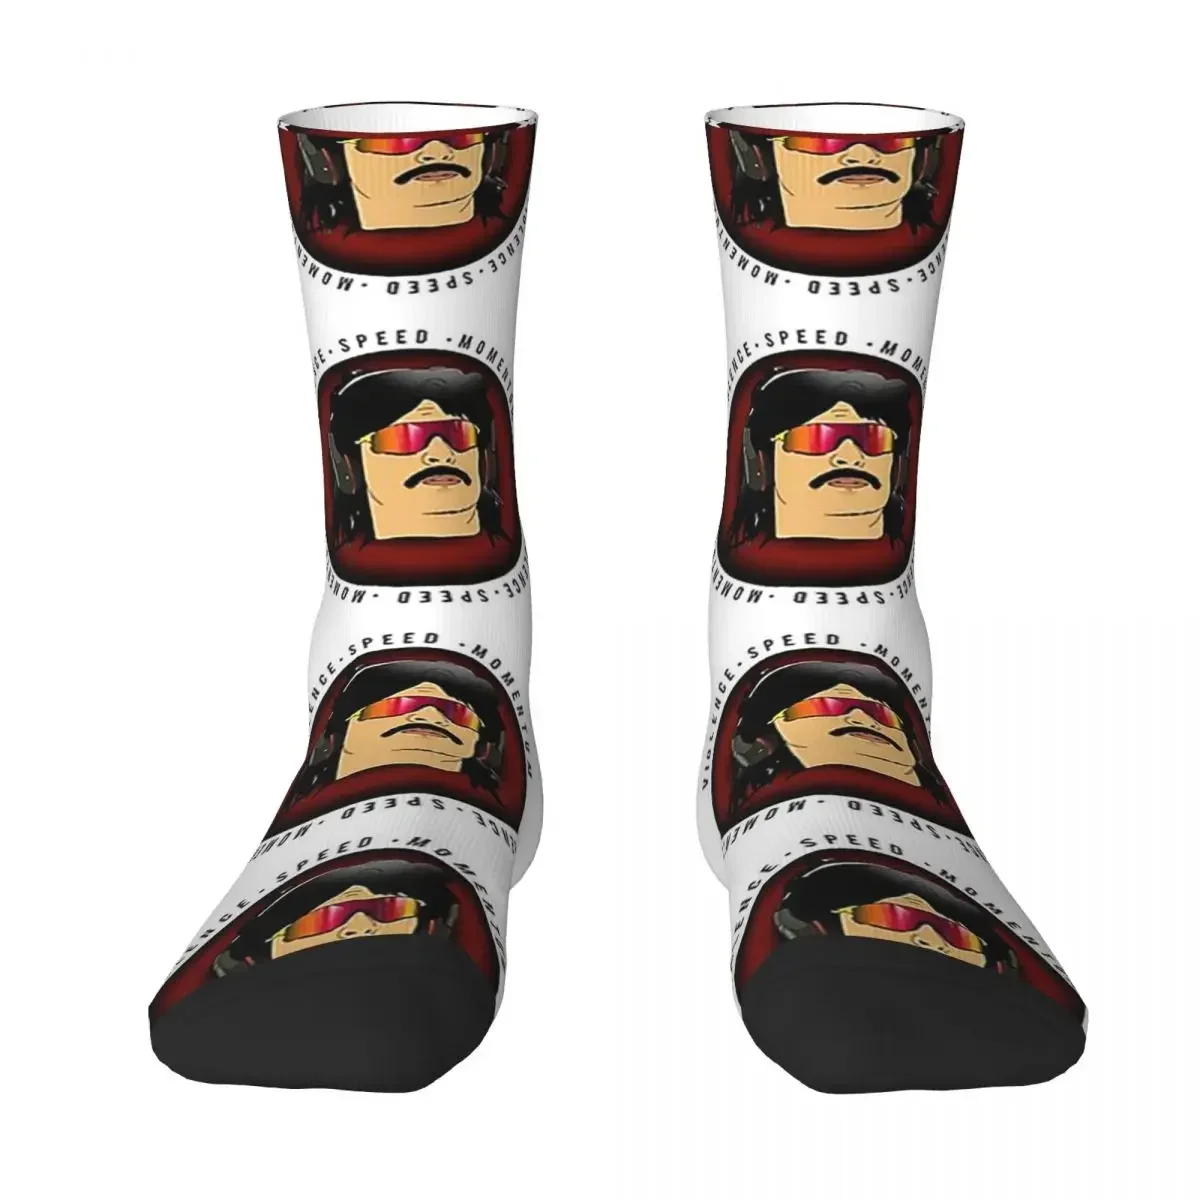 

Всесезонные короткие чулки Dr disread, носки в стиле Харадзюку, сумасшедшие длинные носки в стиле хип-хоп, аксессуары для мужчин и женщин, подарок на день рождения